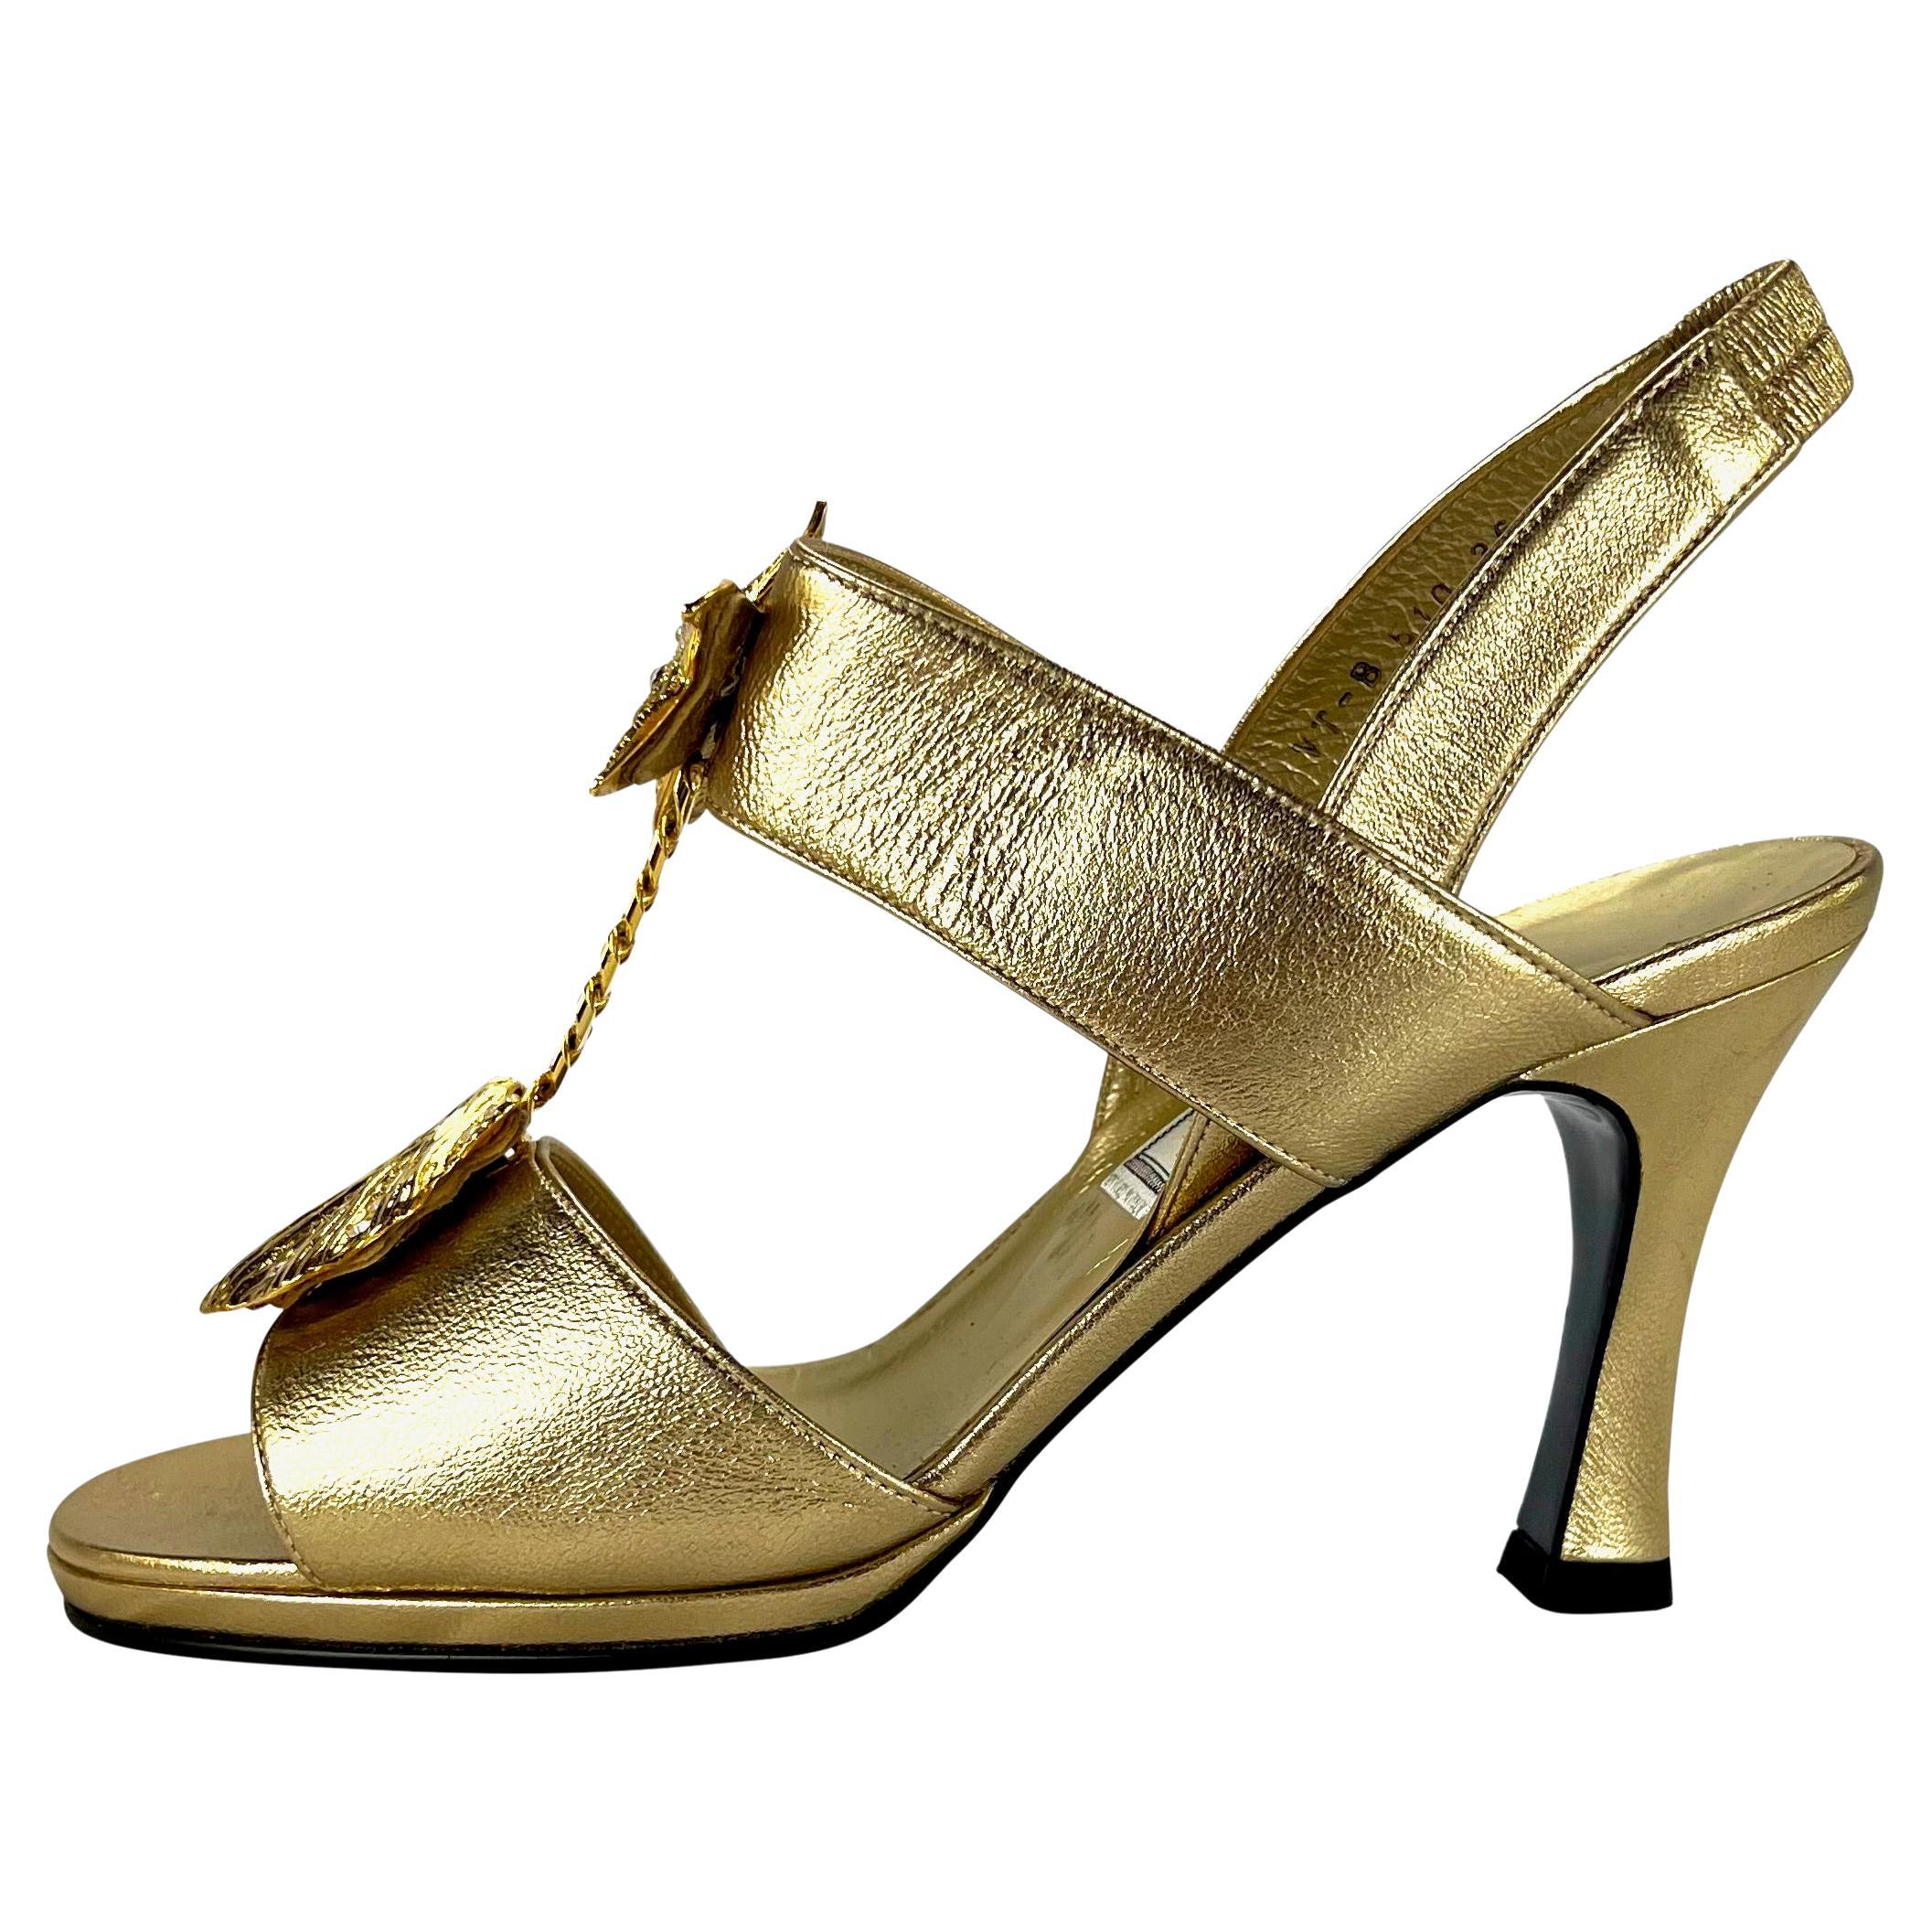 Ich präsentiere ein Paar goldene Sandaletten mit Gianni Versace Mare Motiv, entworfen von Gianni Versace. Aus der Frühjahr/Sommer-Kollektion 1992 wurden ähnliche goldene Absätze auf dem Laufsteg der Saison gezeigt. Dieses fabelhafte Paar Absätze hat